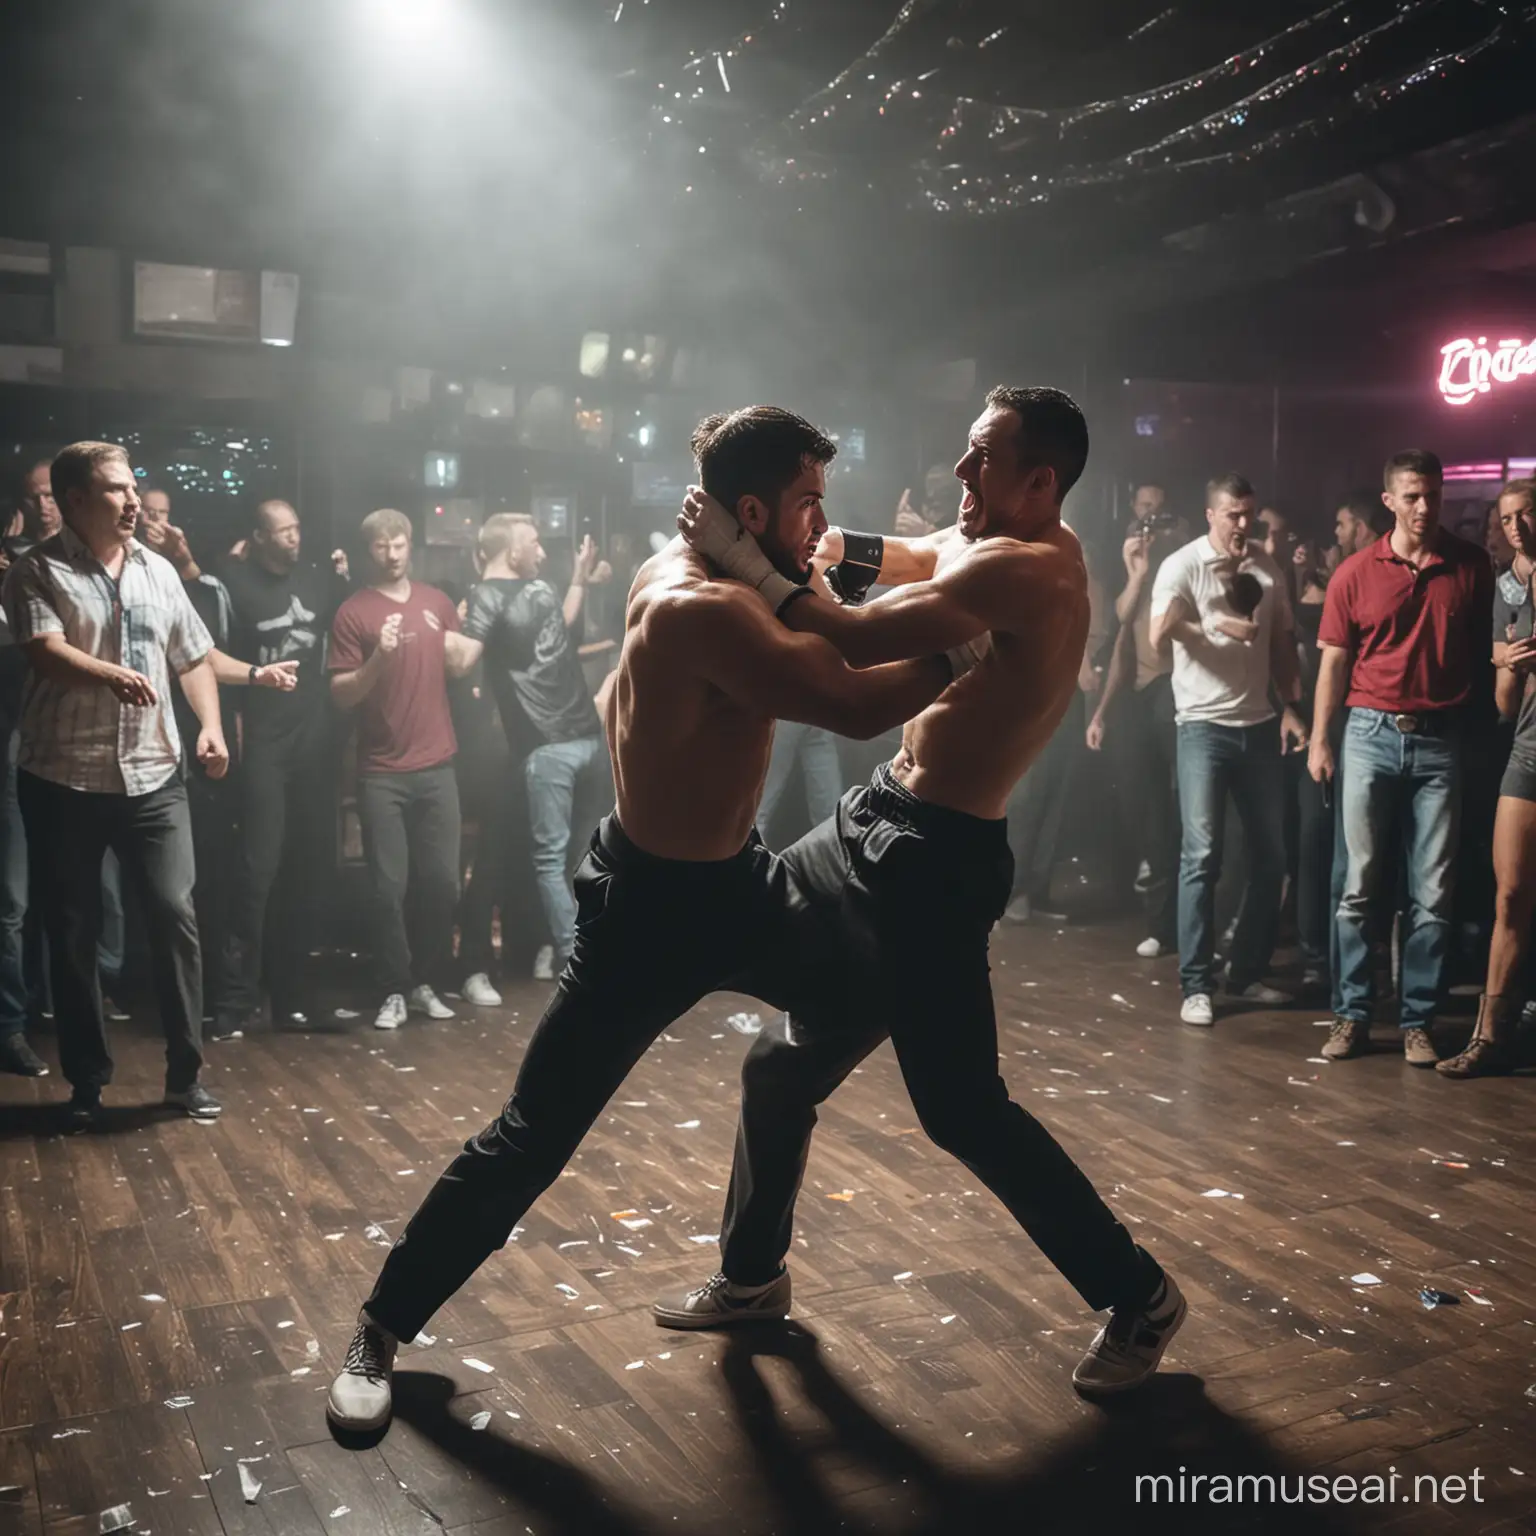 Intense Nightclub Brawl Two Men Engaged in a Fiery Fight